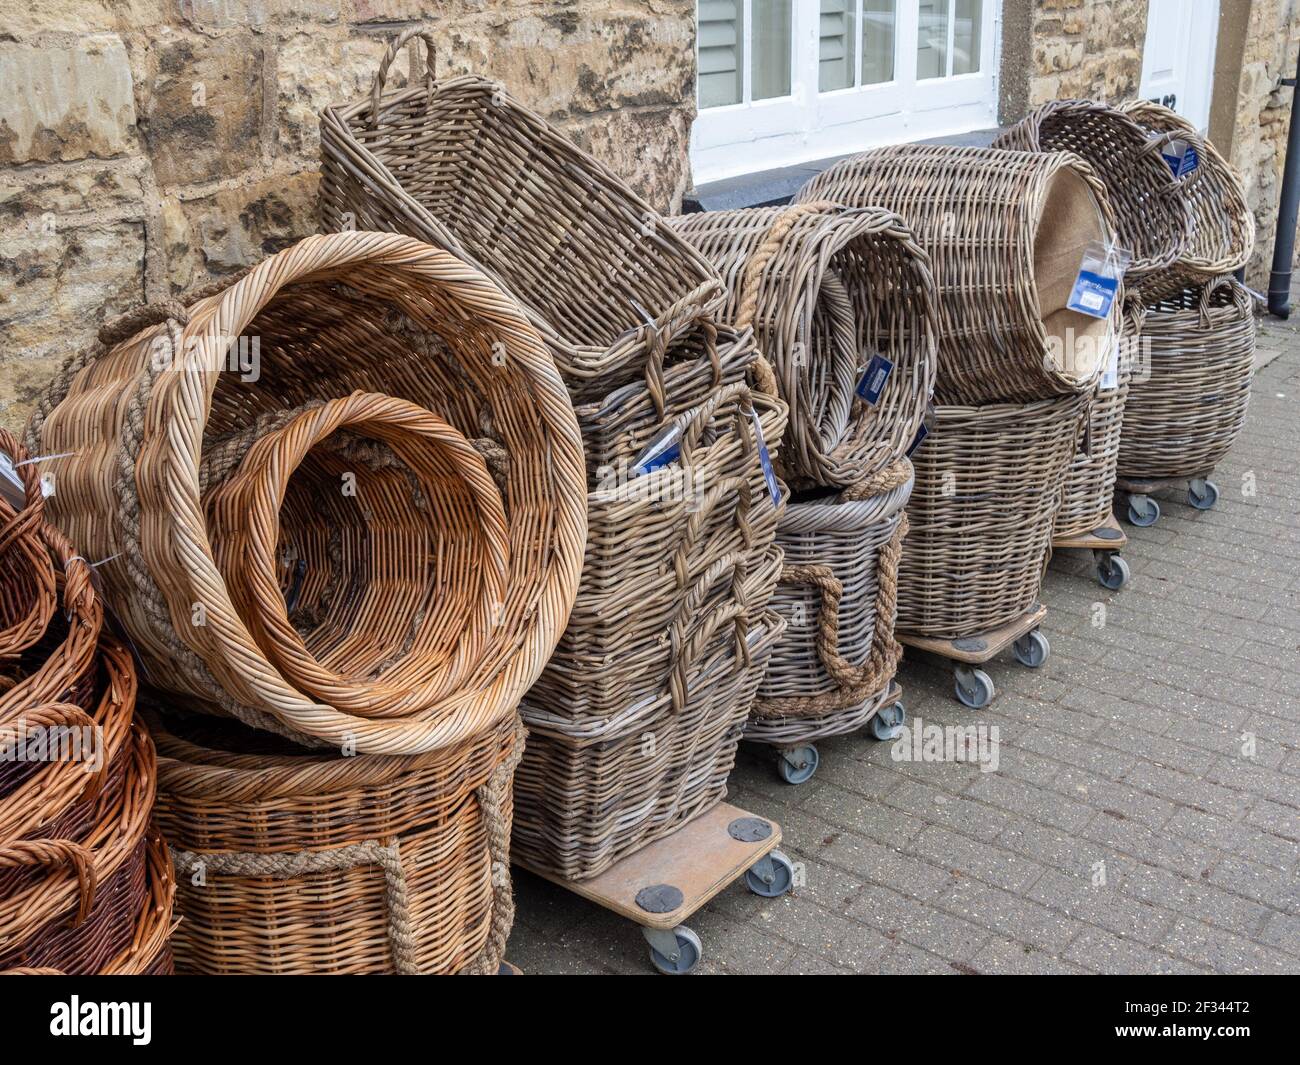 Korbkörbe zum Verkauf außerhalb eines Baumarkt, Olney, Buckinghamshire,  Großbritannien Stockfotografie - Alamy